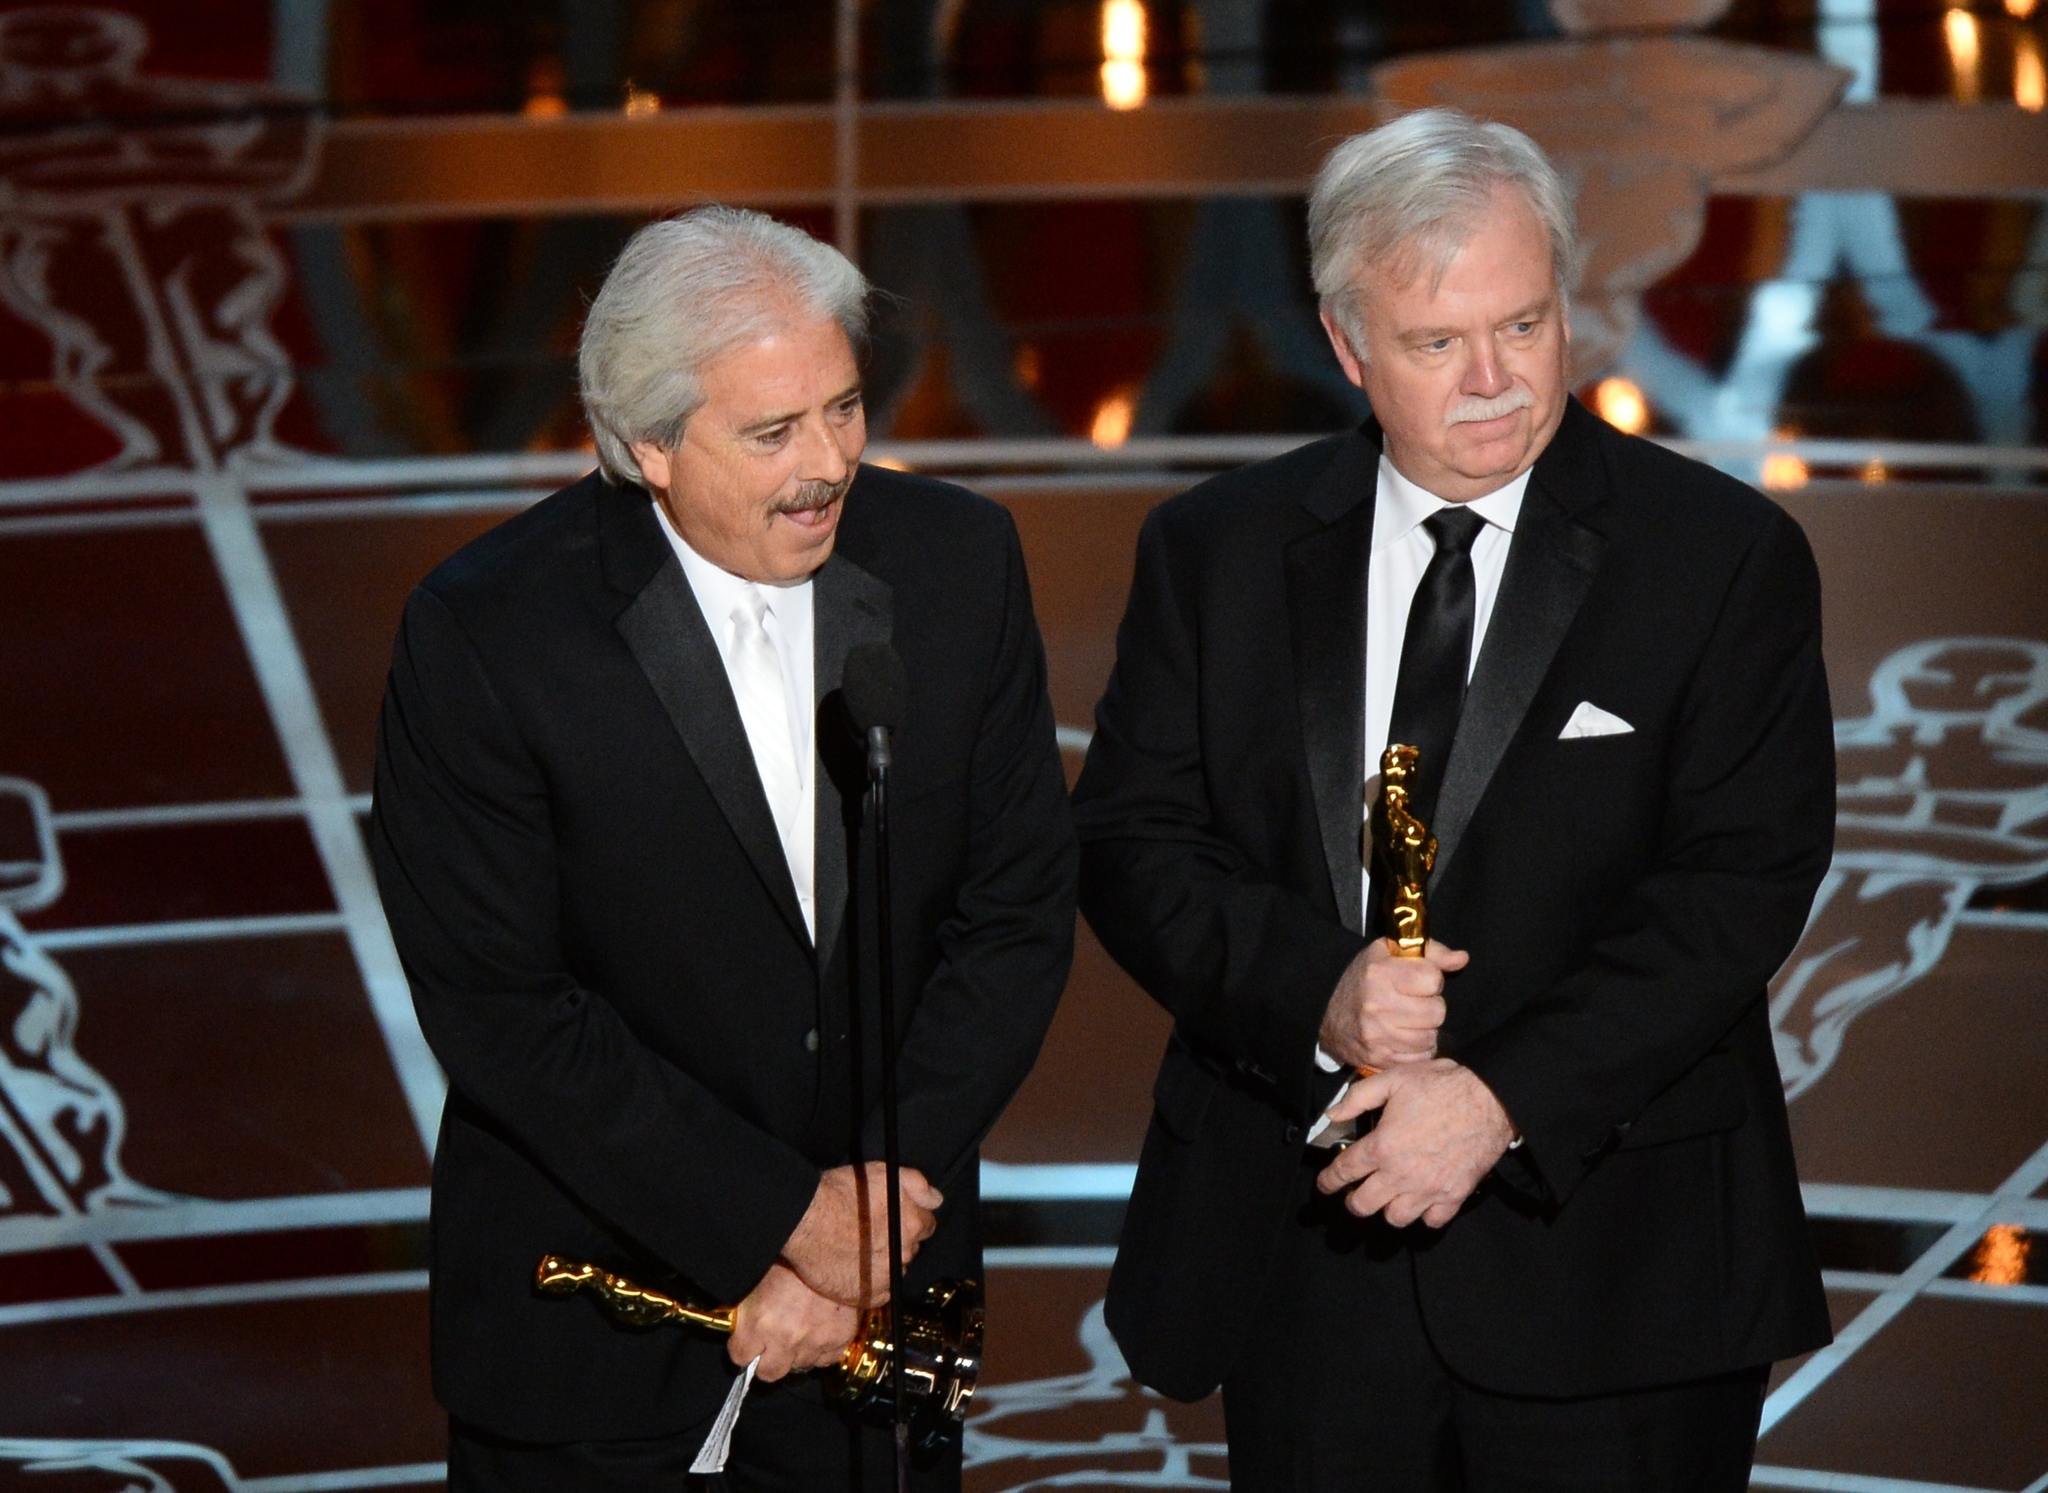 Bub Asman and Alan Robert Murray at event of The Oscars (2015)